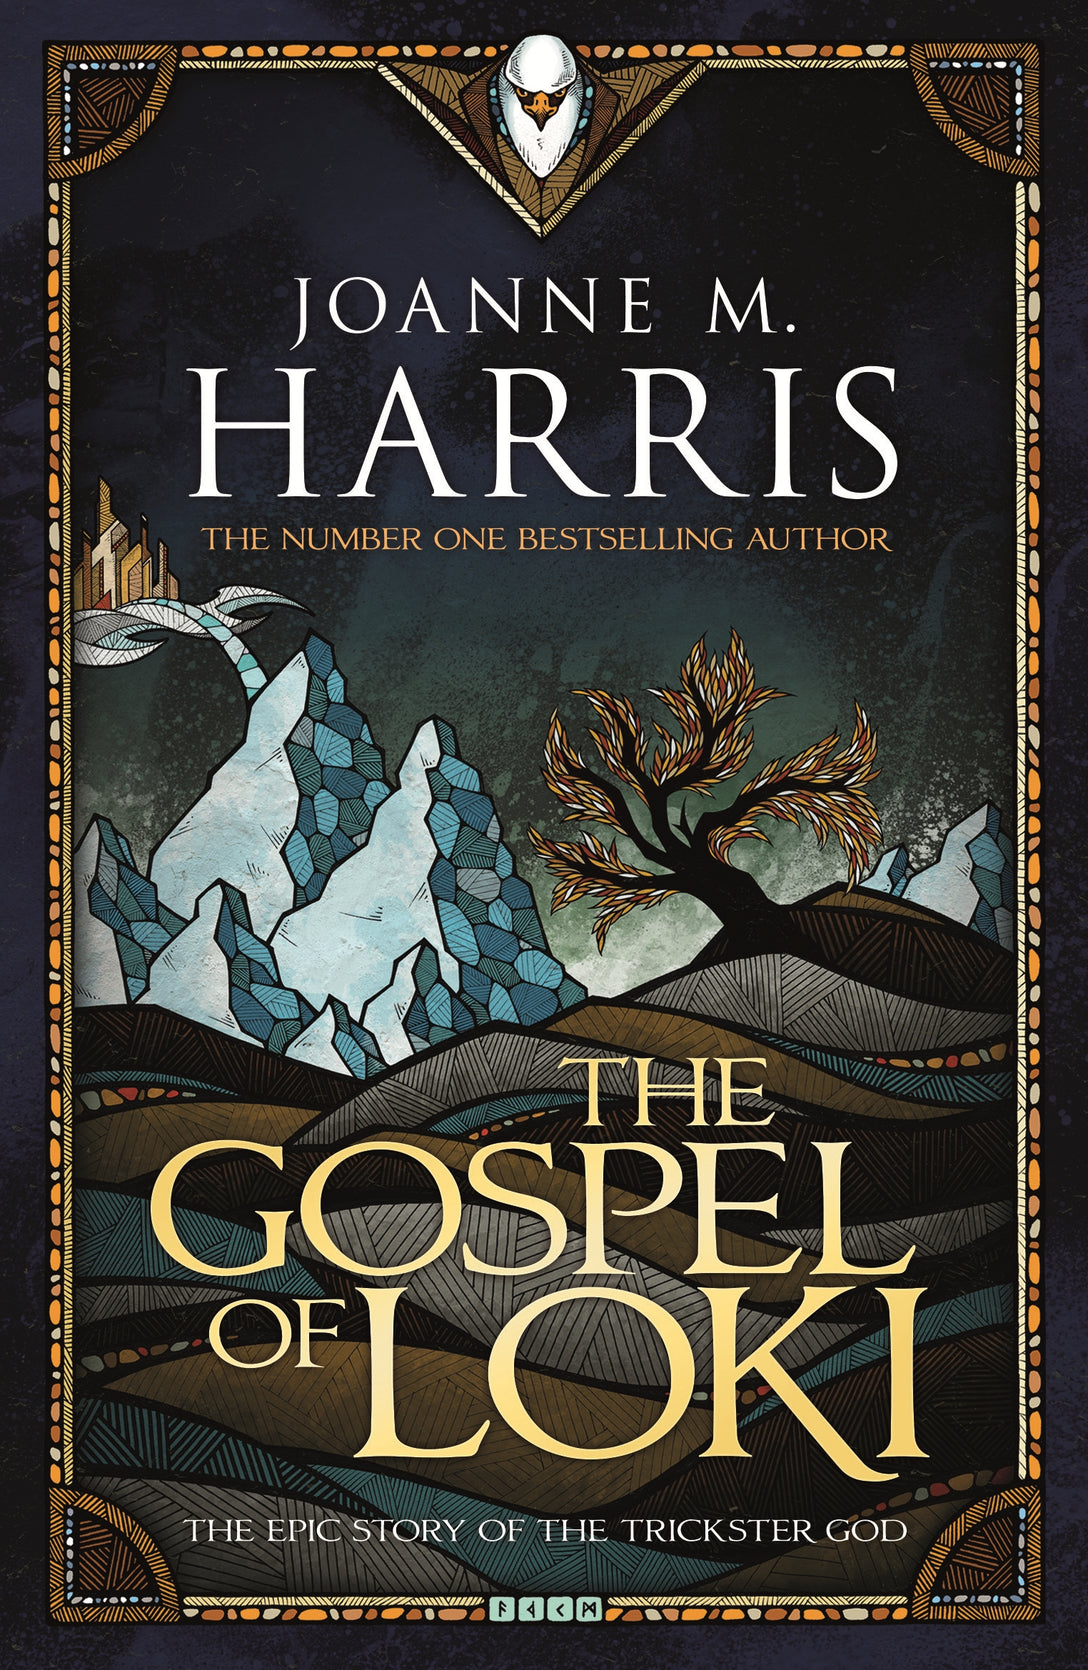 The Gospel of Loki by Joanne Harris